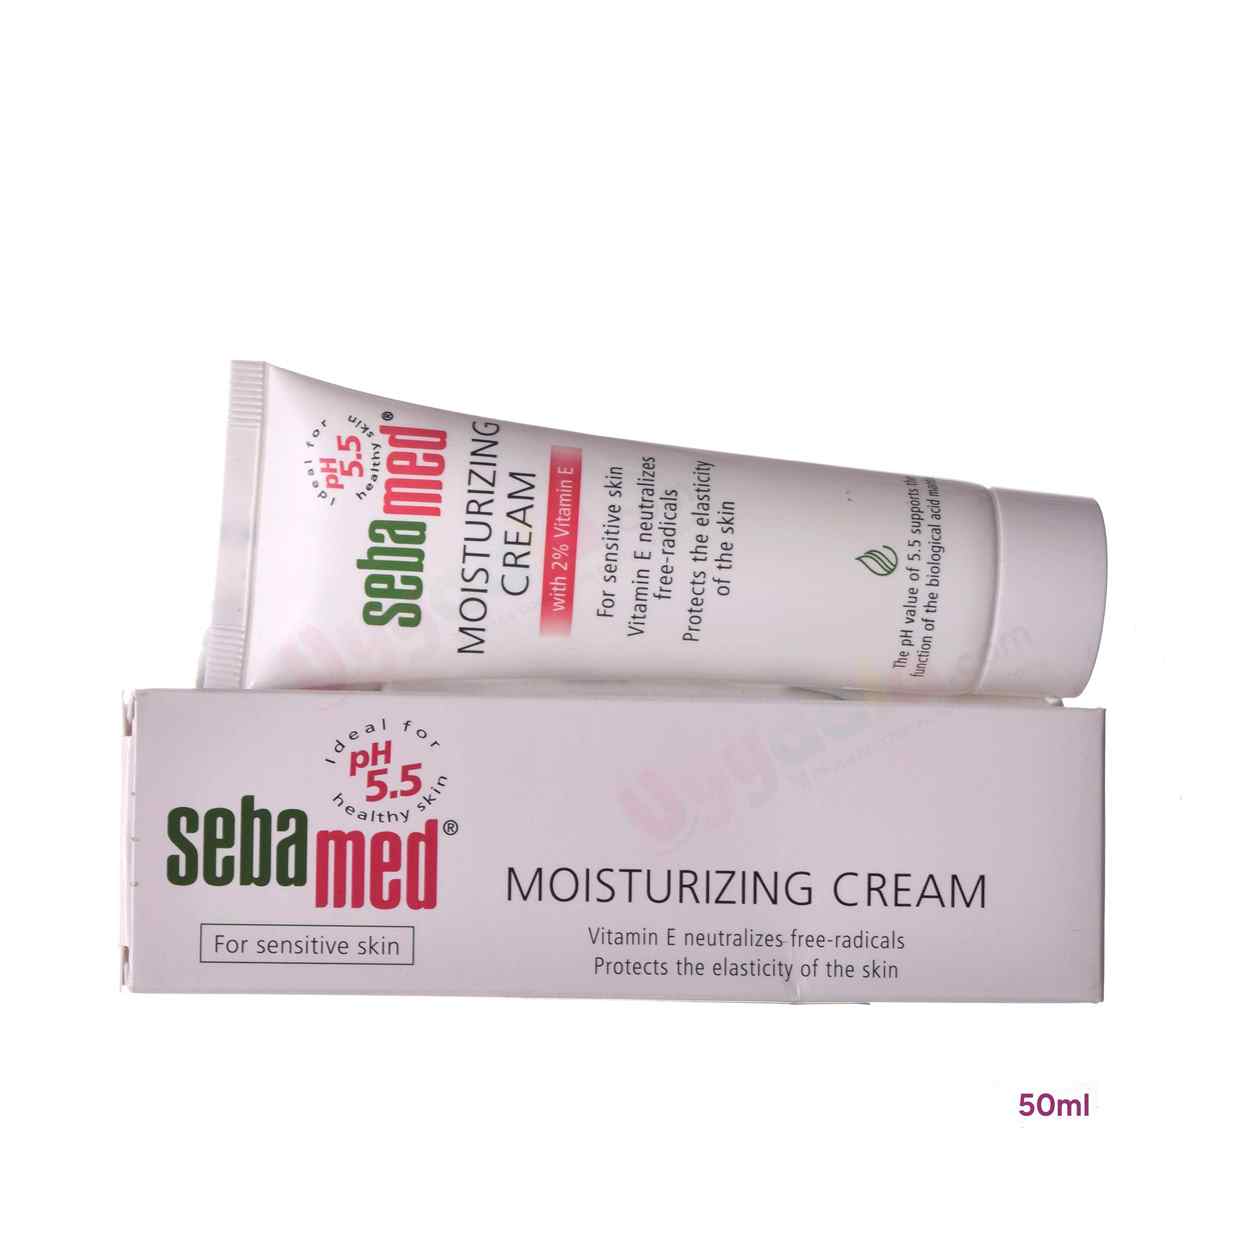 SEBAMED Moisturizing cream for sensitive skin for adults - 50ml